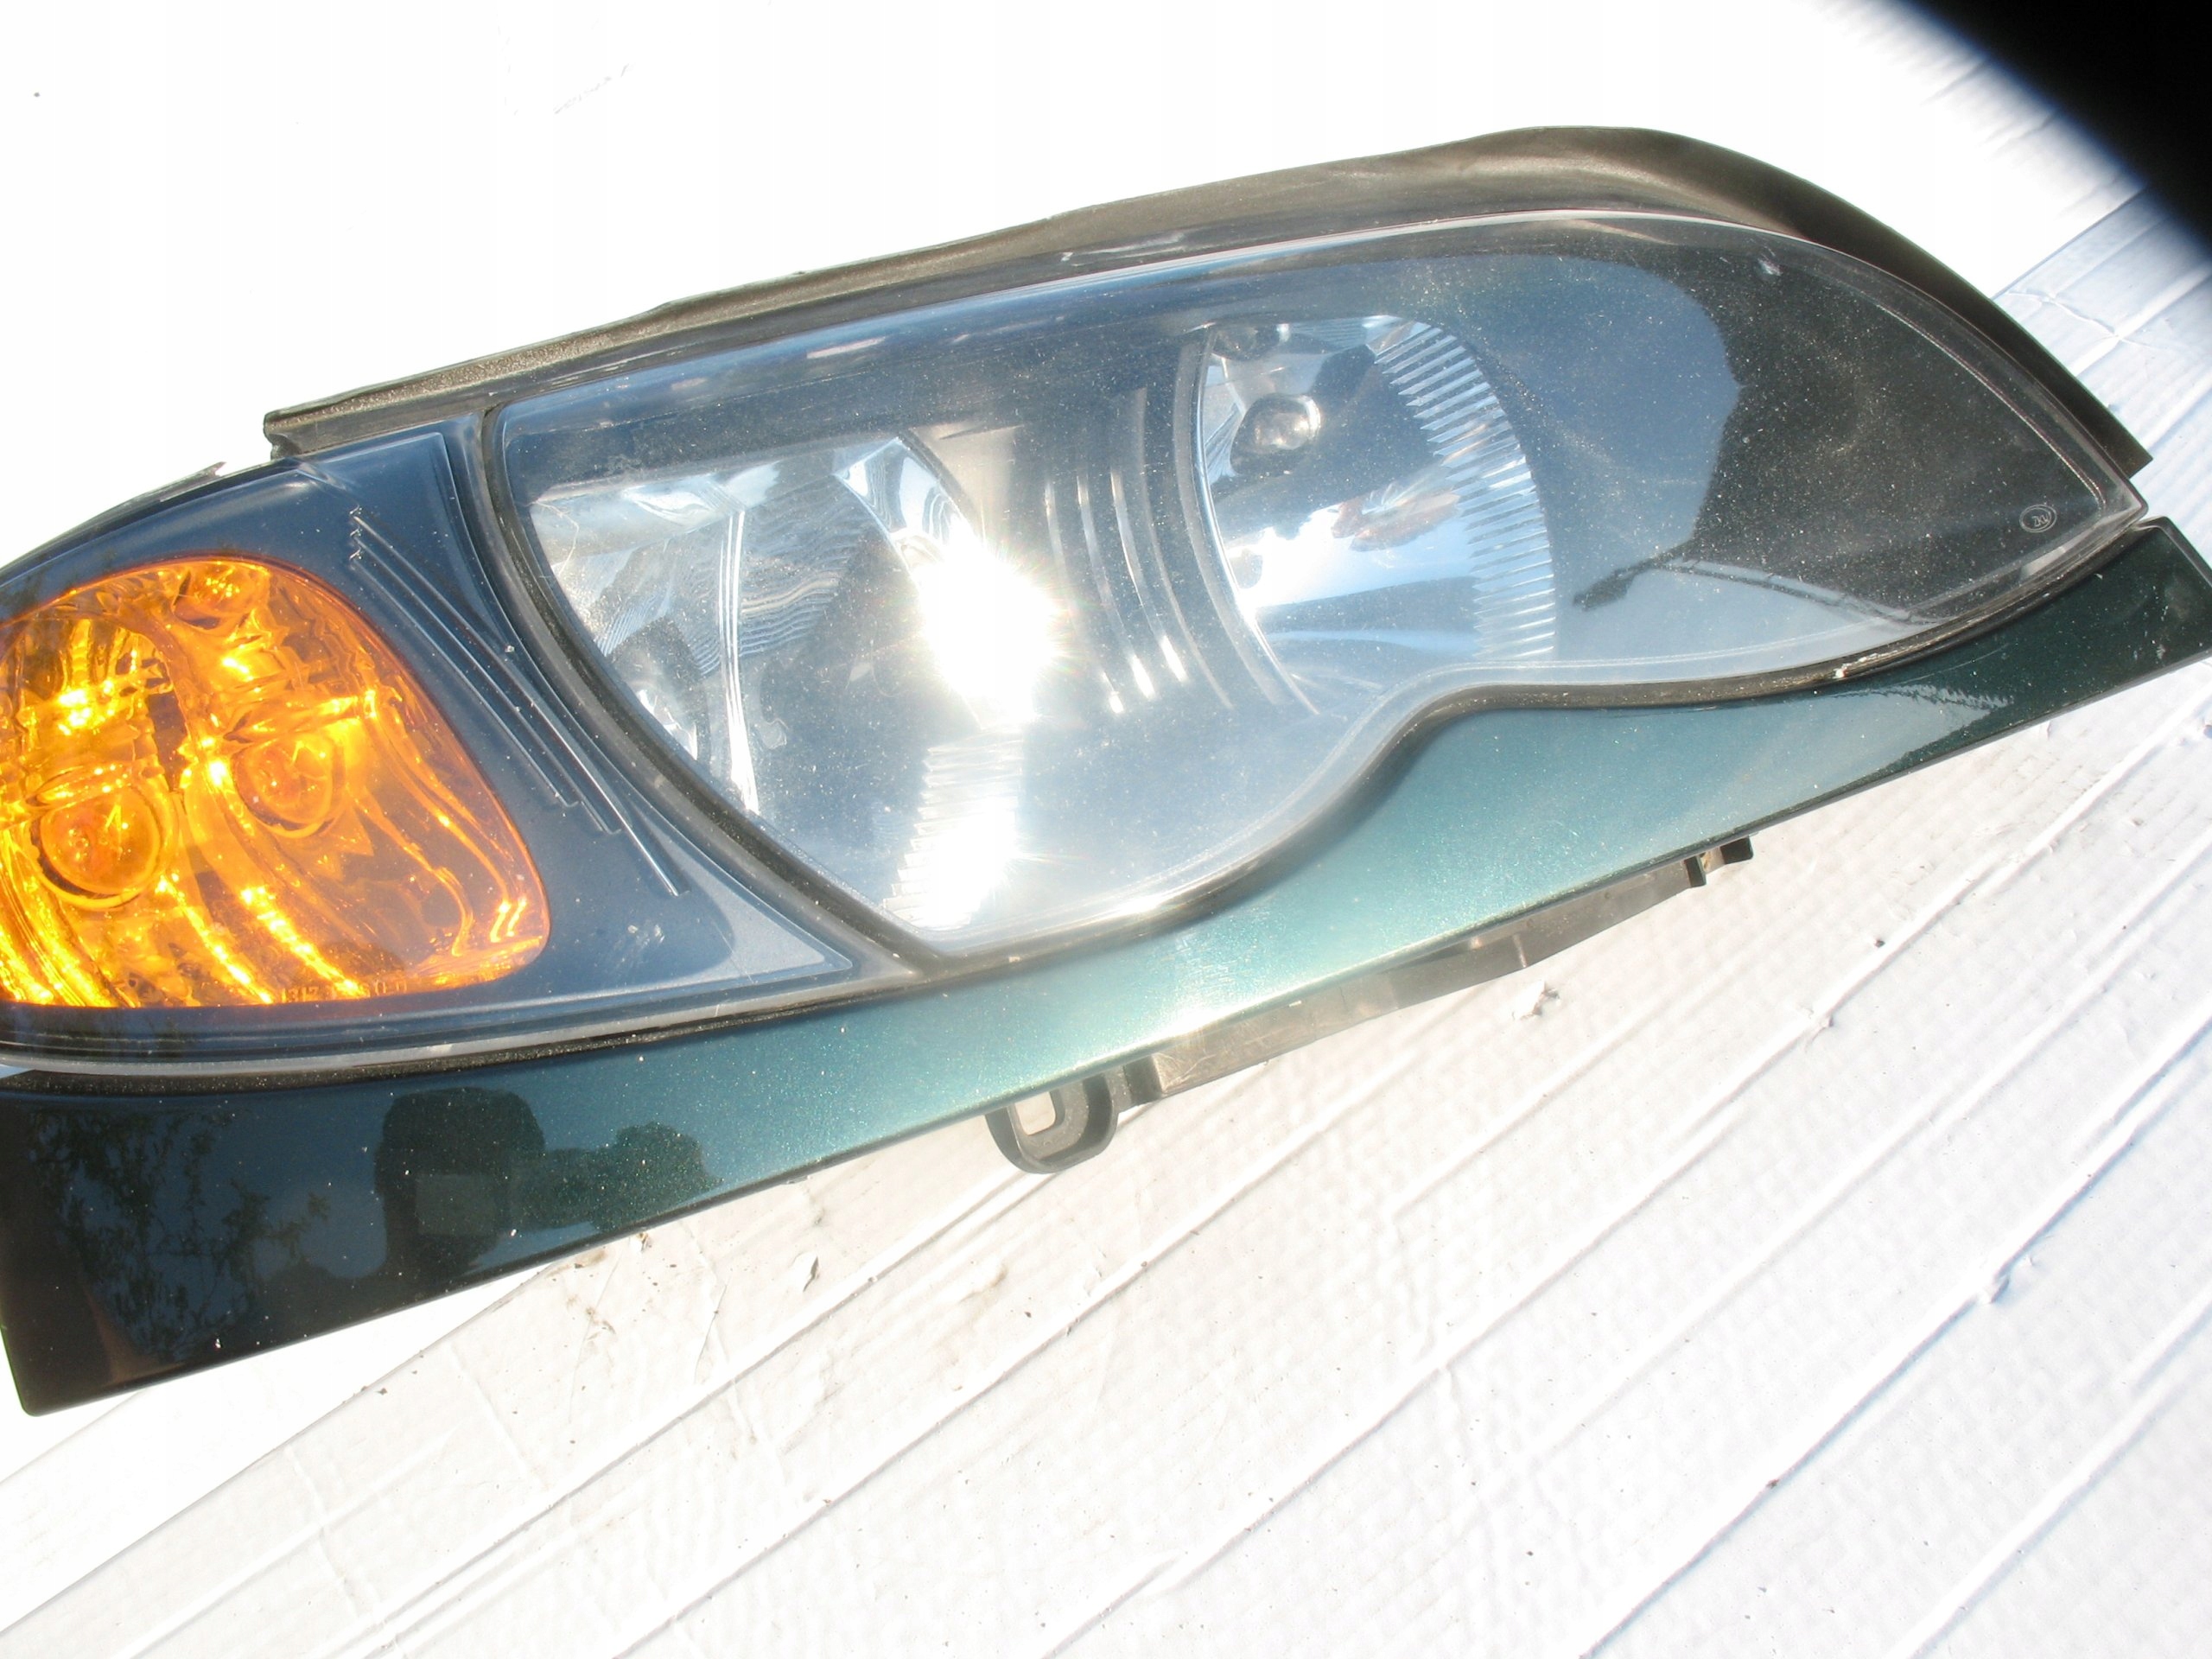 BMW E46 KLOSZ LAMPY REFLEKTORA PRAWY PRZED LIFTEM